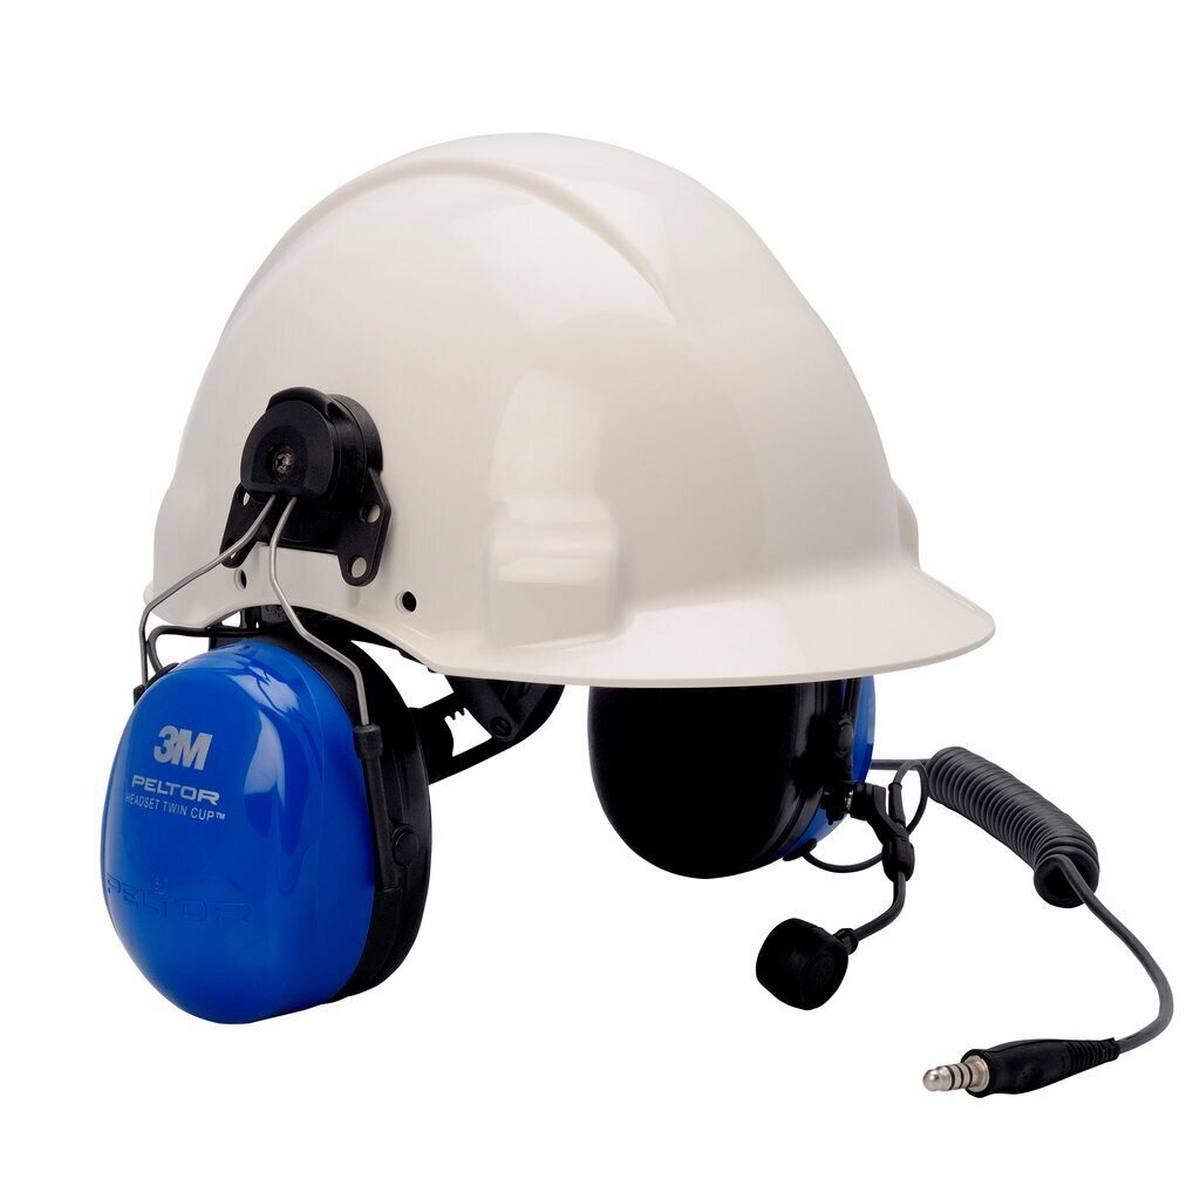 3M PELTOR IS headset met hoge demping, J11 connector, dubbele schelpen, 31 dB, helmbevestiging, MT72H540P3E-50